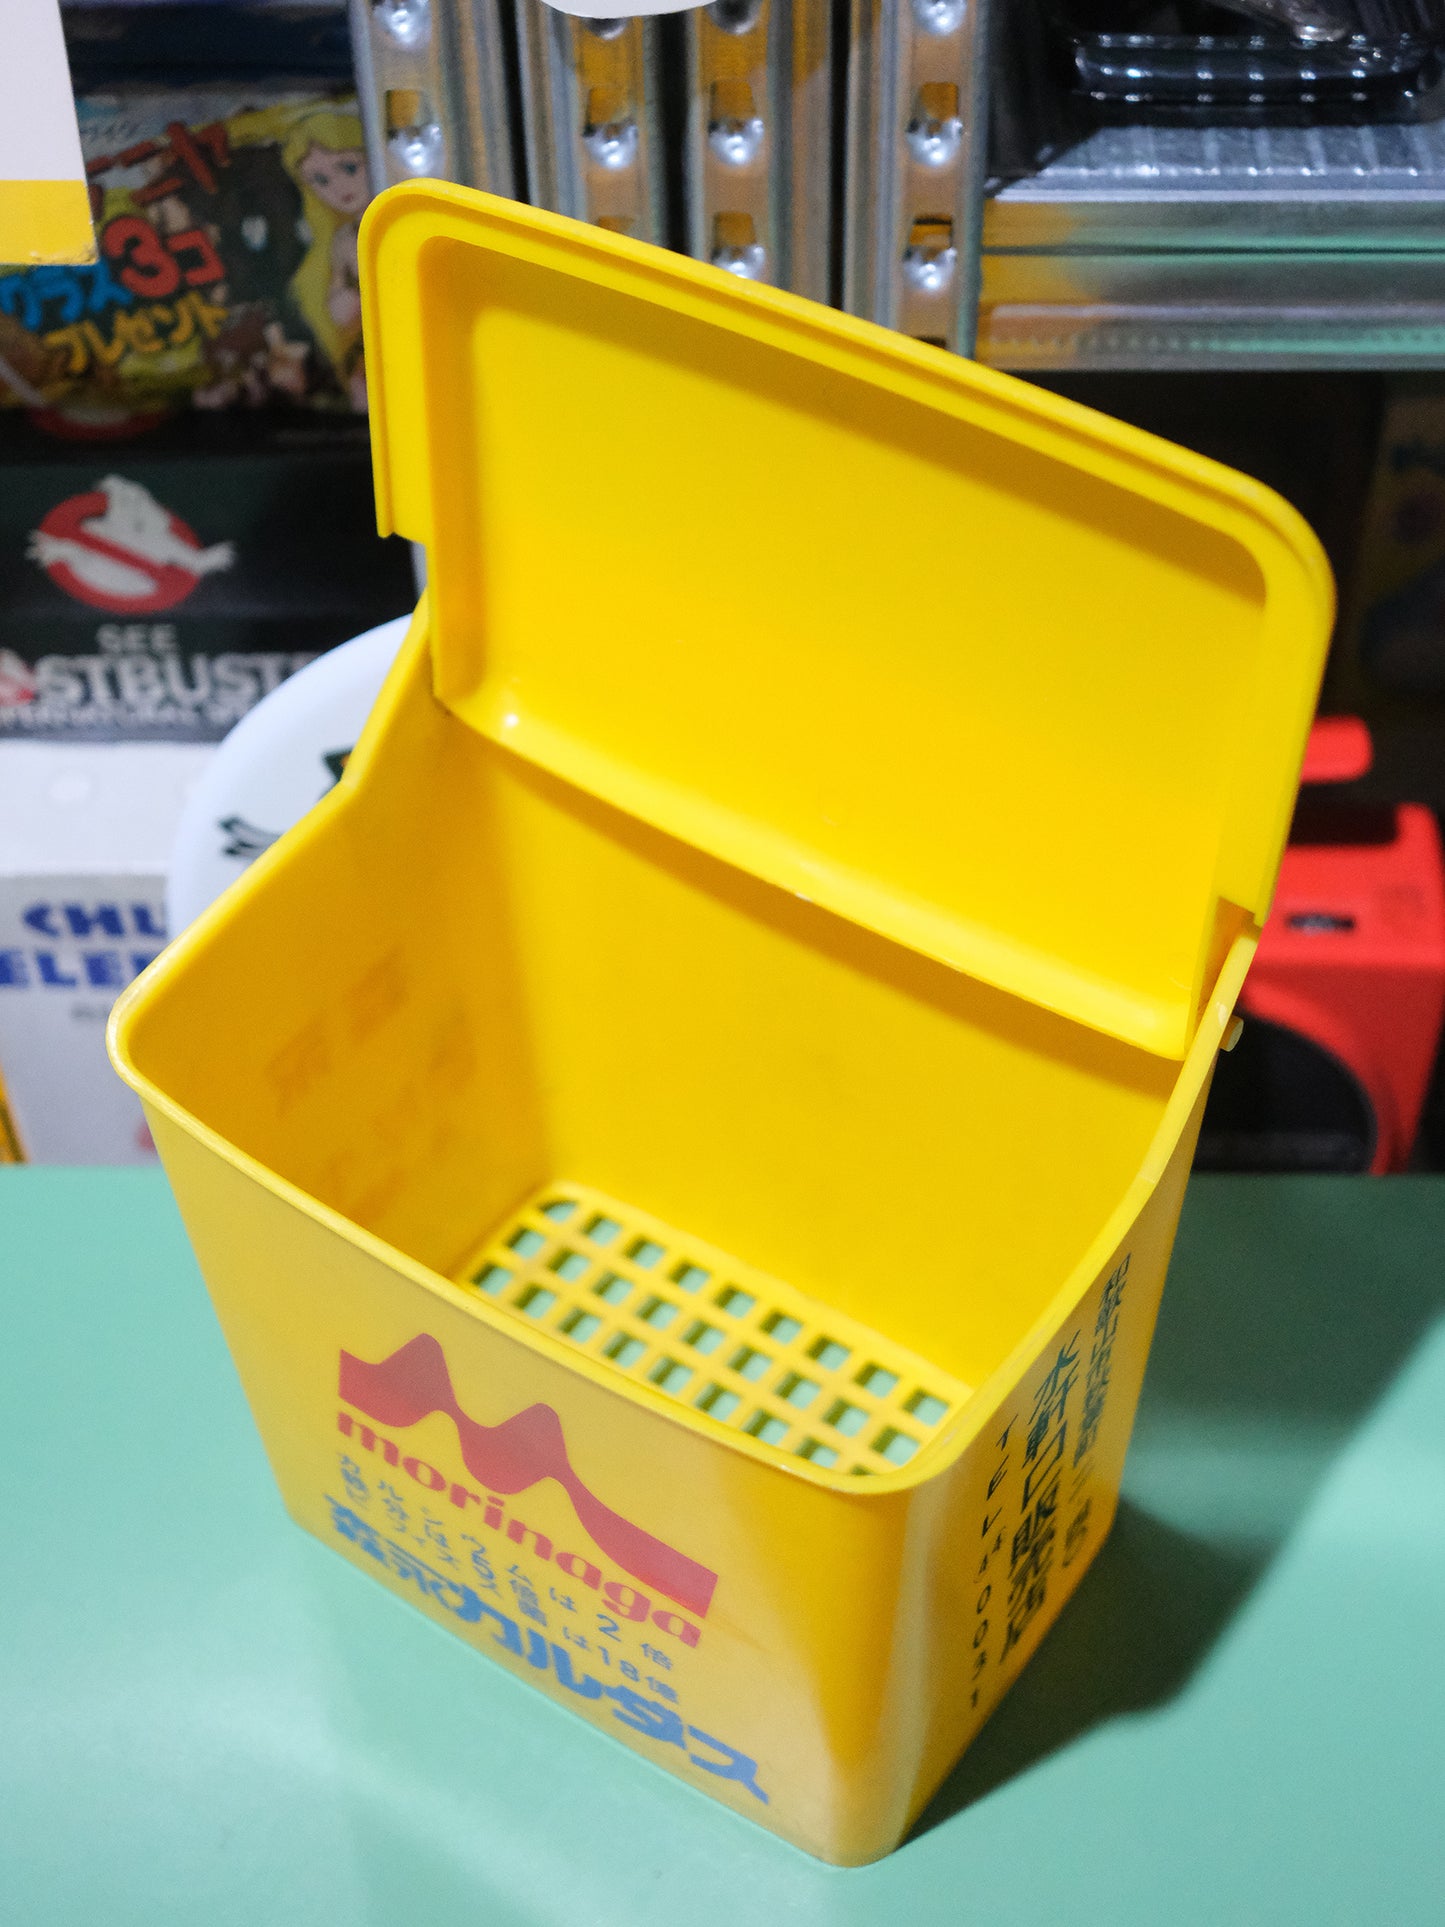 日本 Morinaga 森永牛乳 塑膠制 黃色 牛奶箱 宅配箱 Milk Box